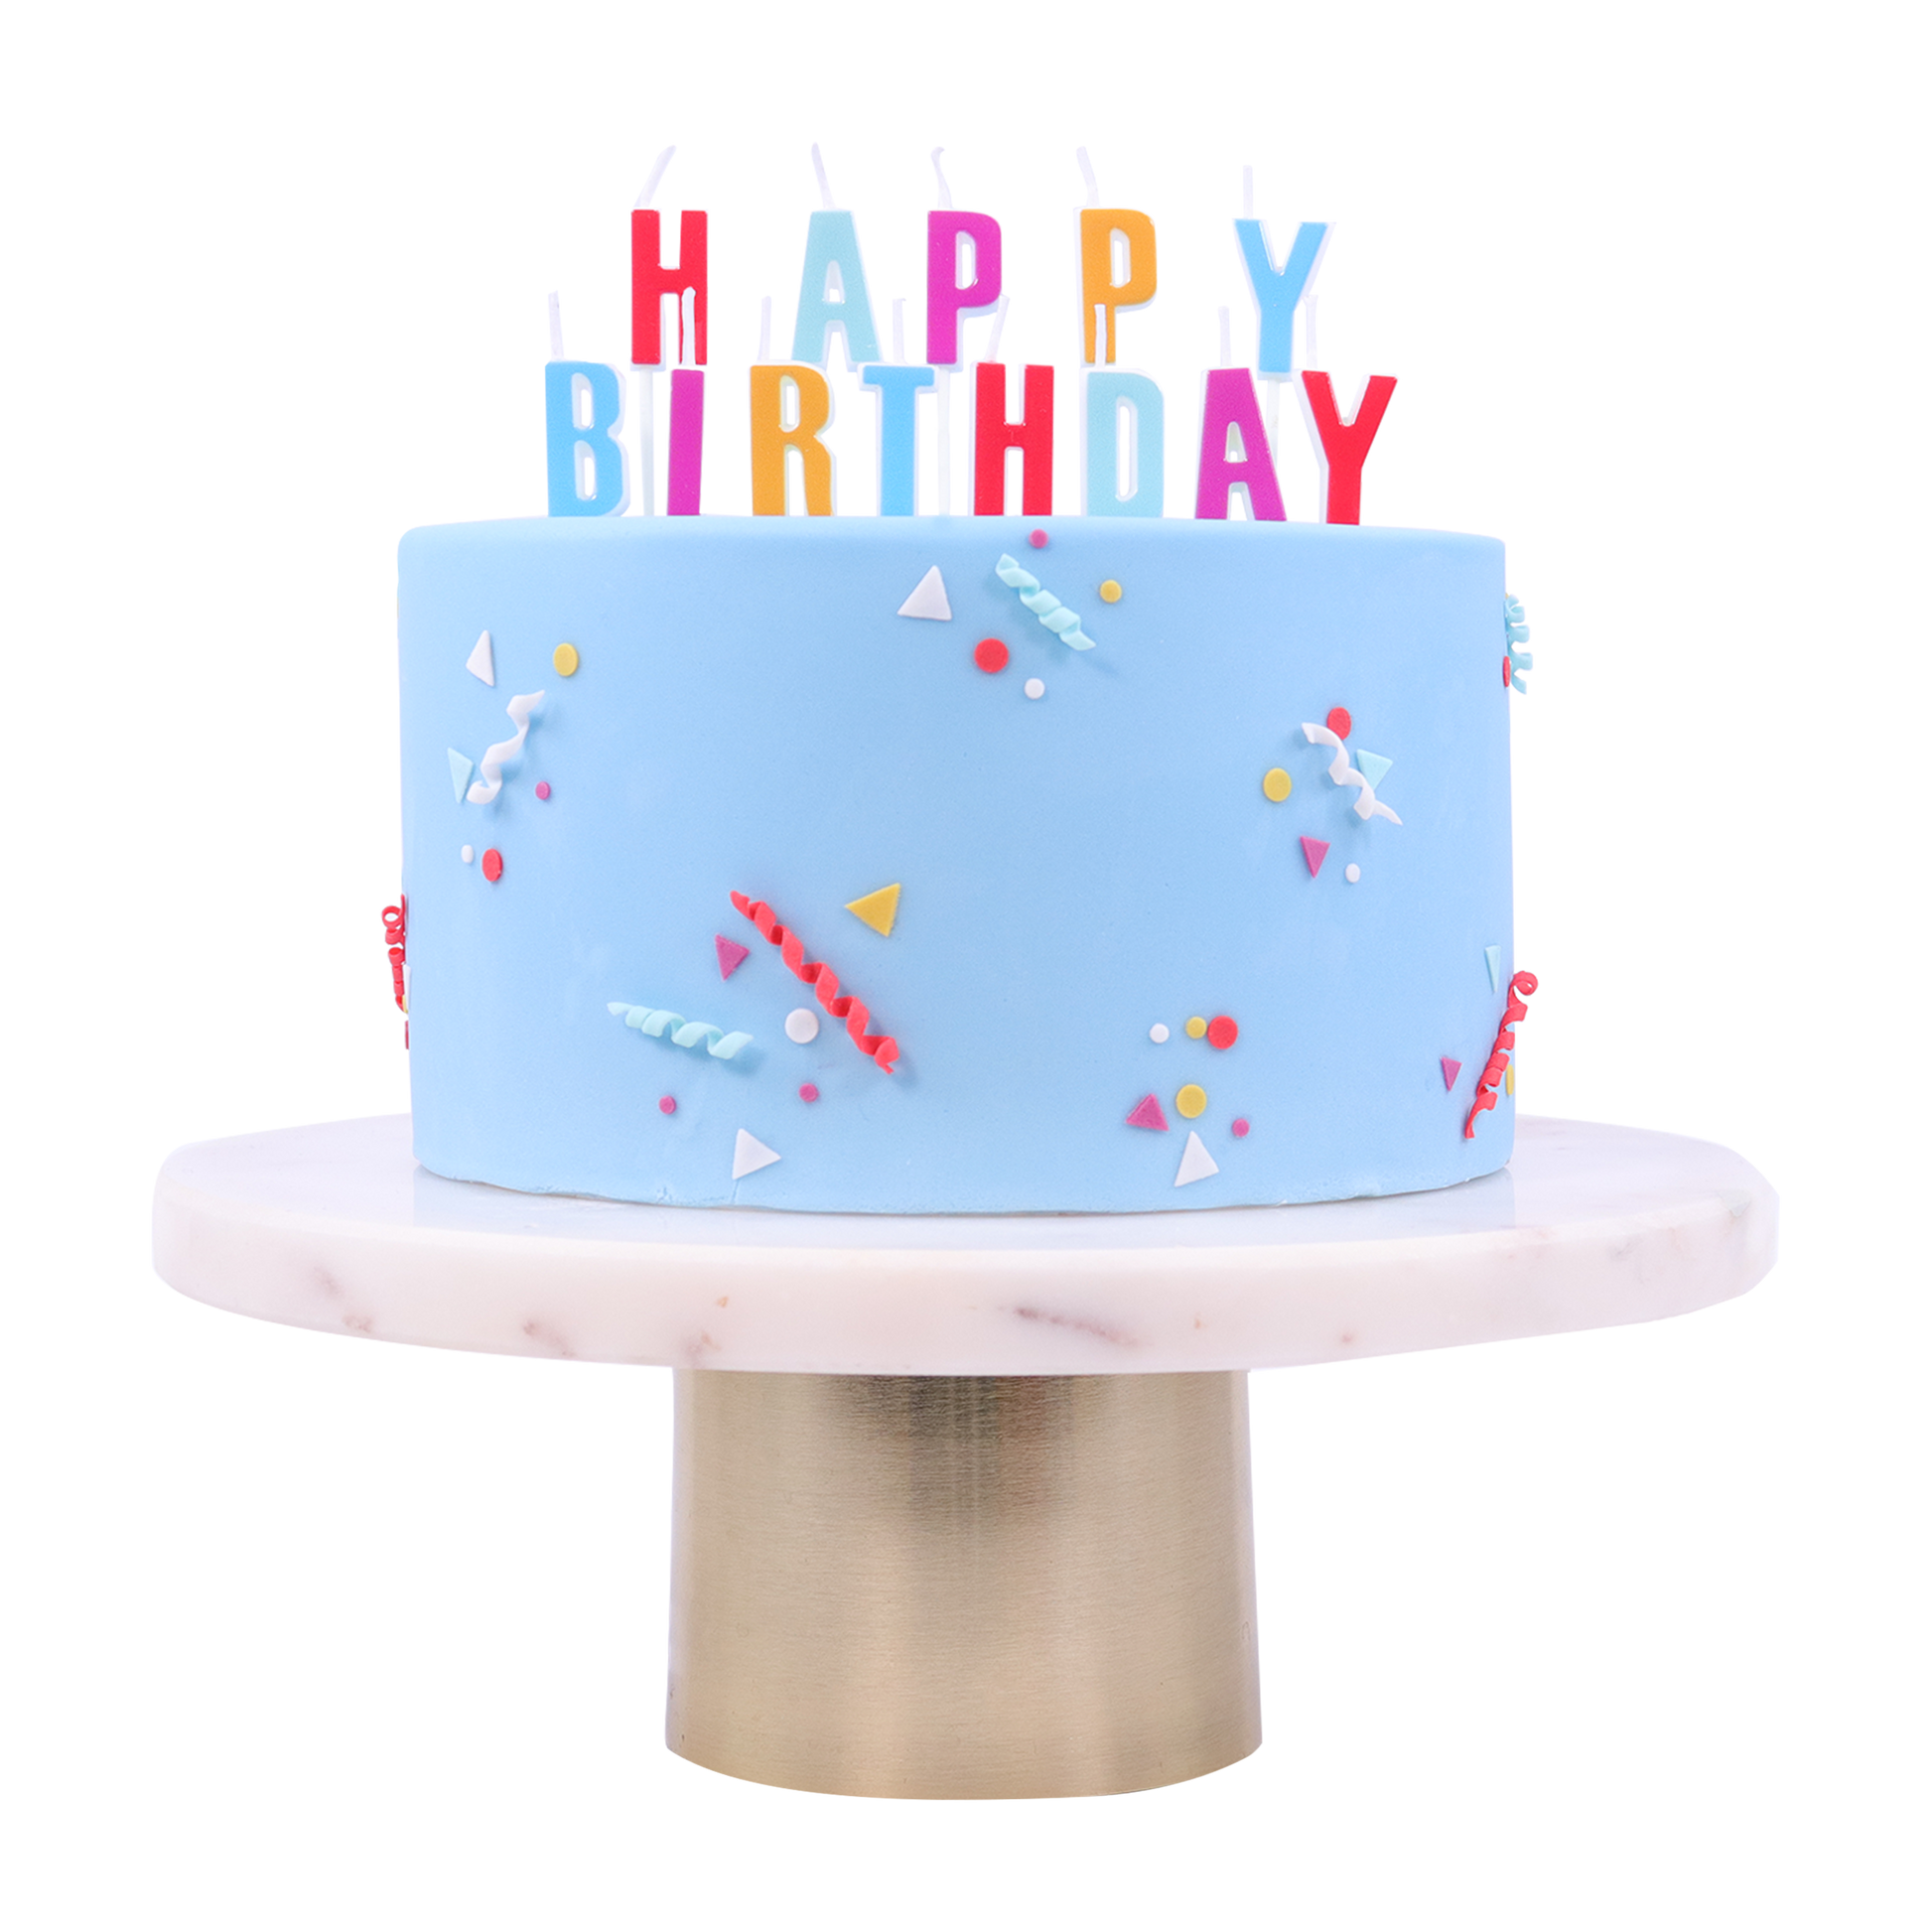 PME Kerze - Happy Birthday mehrfarbig